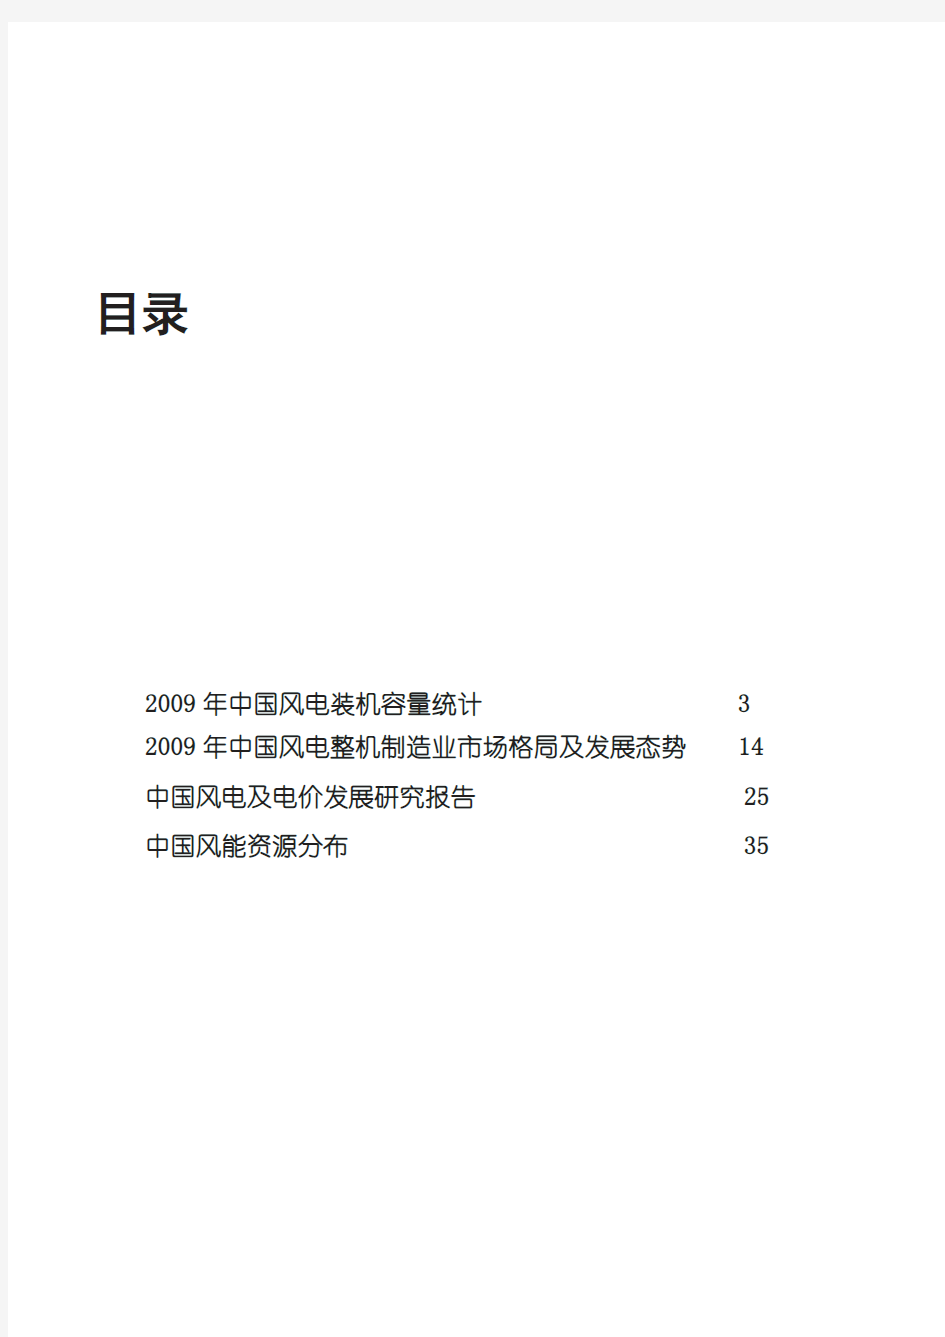 2009年中国风电产业报告资料汇编